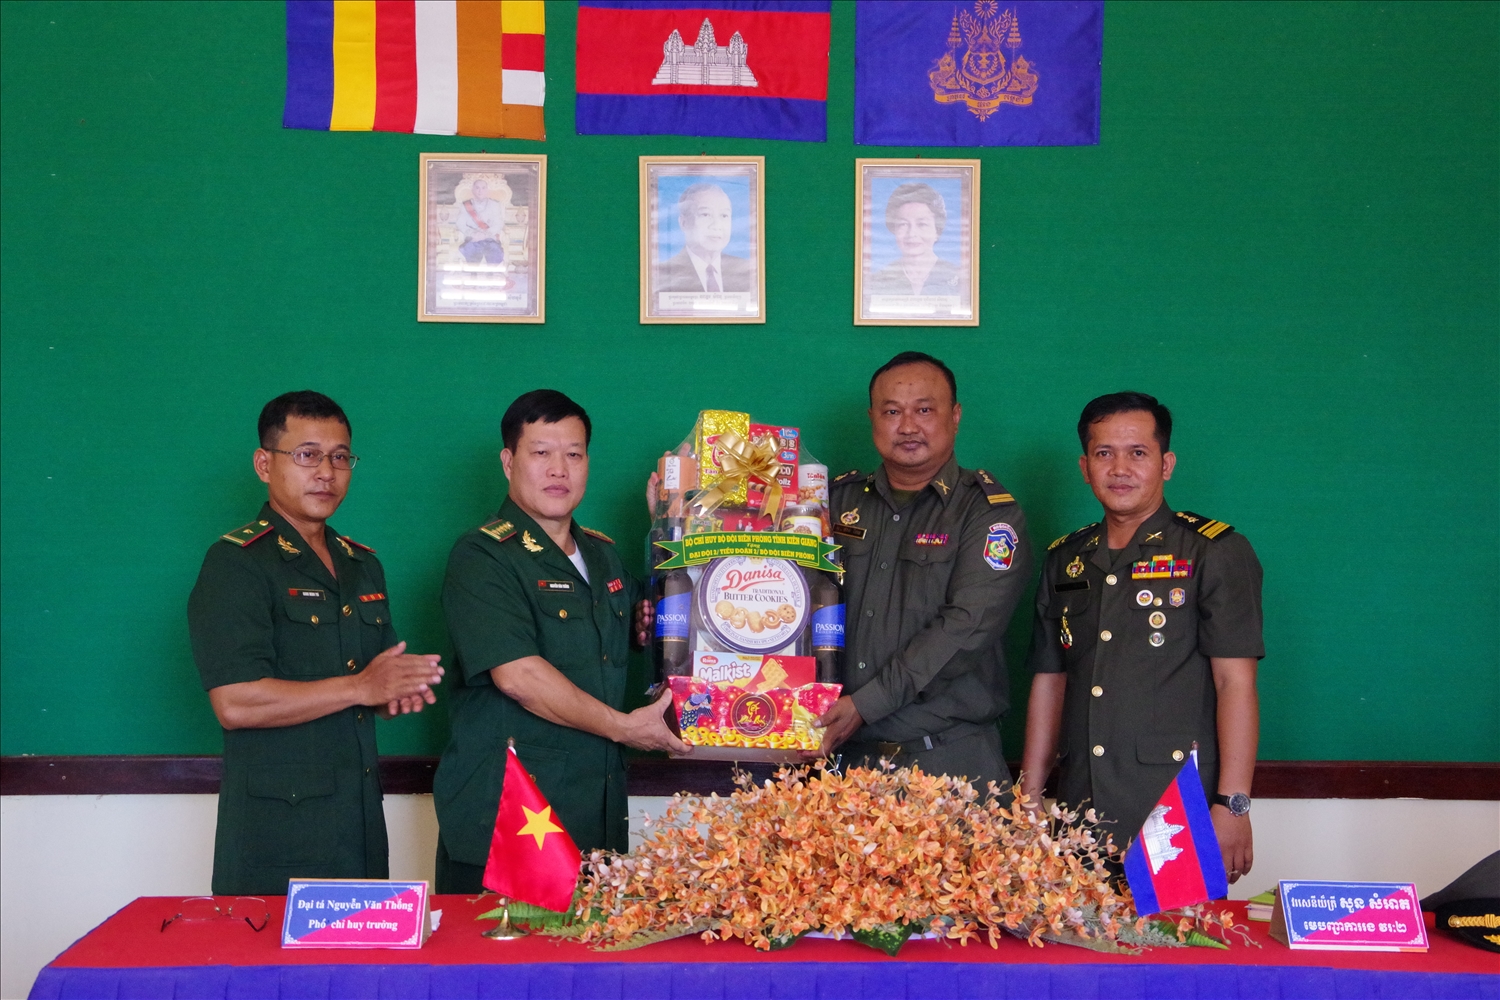 Đại tá Nguyễn Văn Thống, phó chỉ huy trưởng nghiệp vụ BĐBP tỉnh Kiên Giang tặng quà lực lượng bảo vệ biên giới nước ban Campuchia